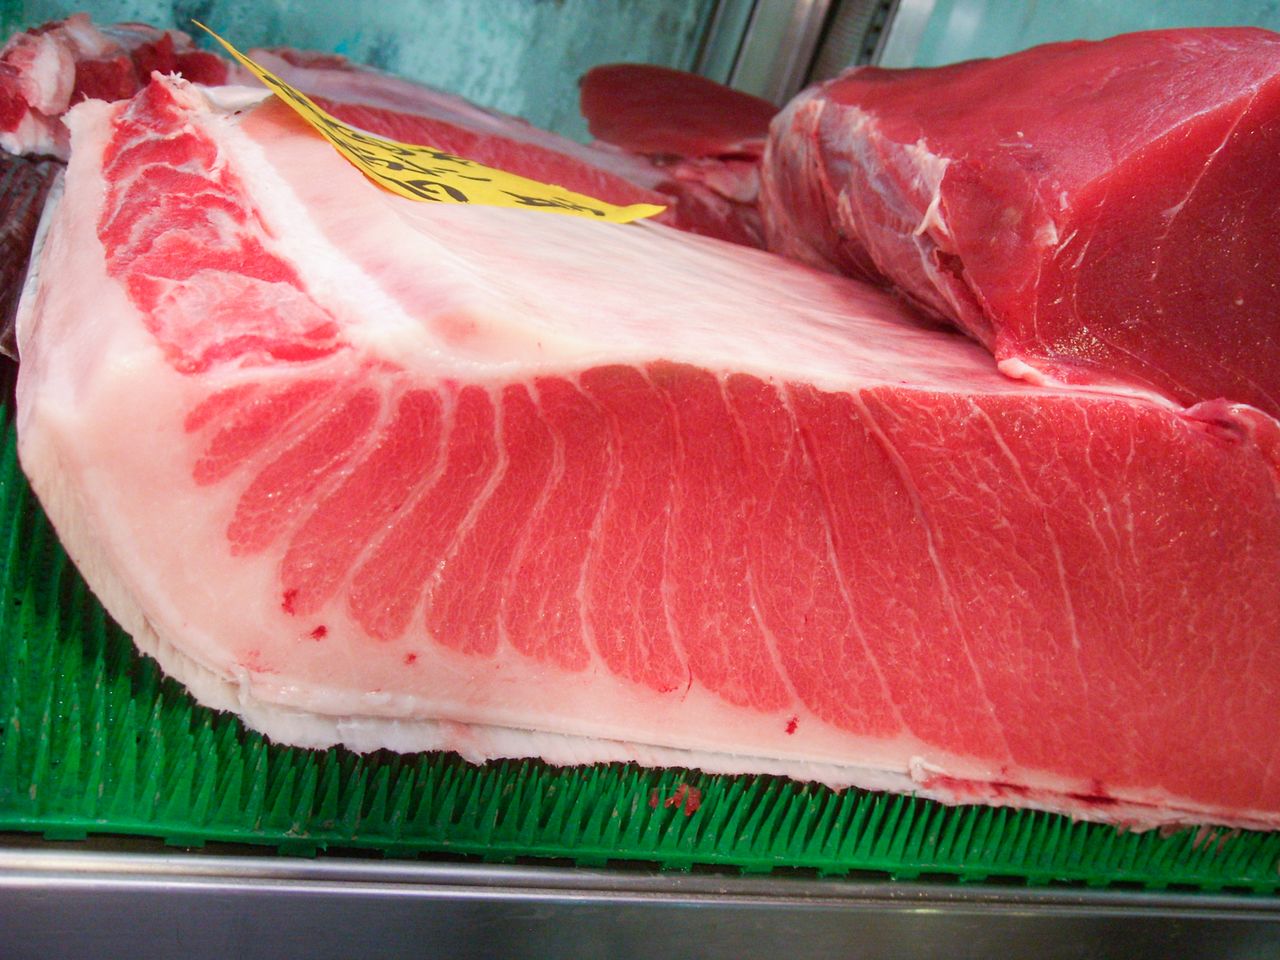 Блок тунца с филе тю-торо в оптовом магазине на рыбном рынке Тоёсу